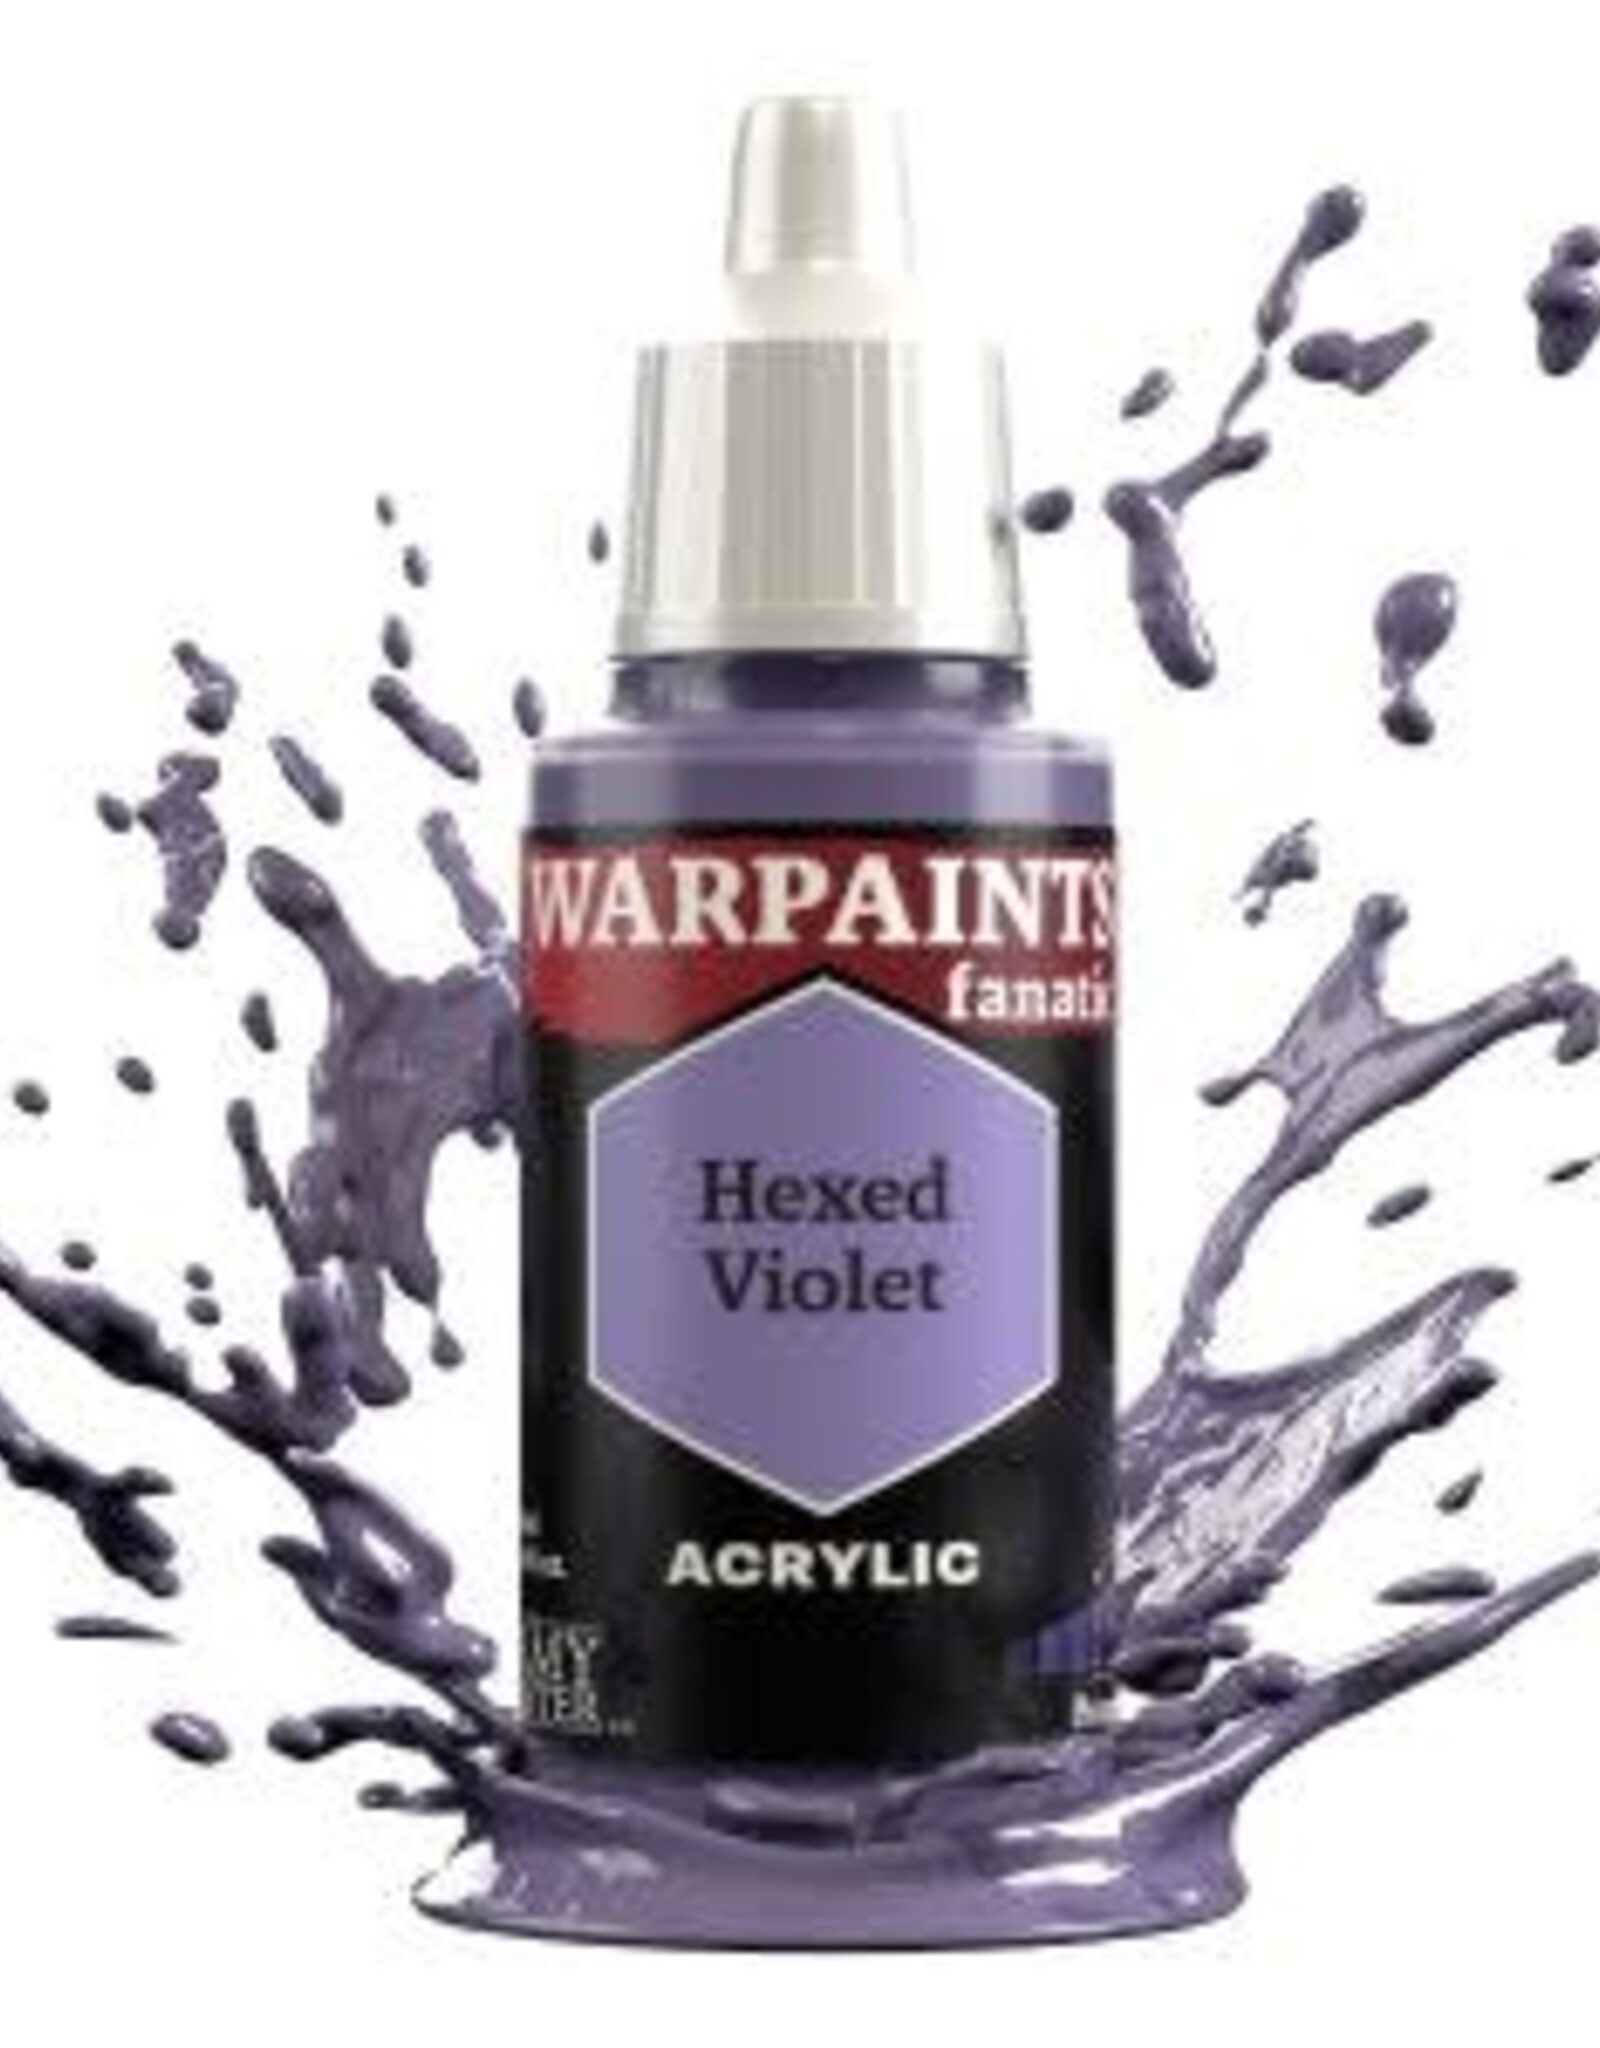 Warpaints Fanatic: Hexed Violet